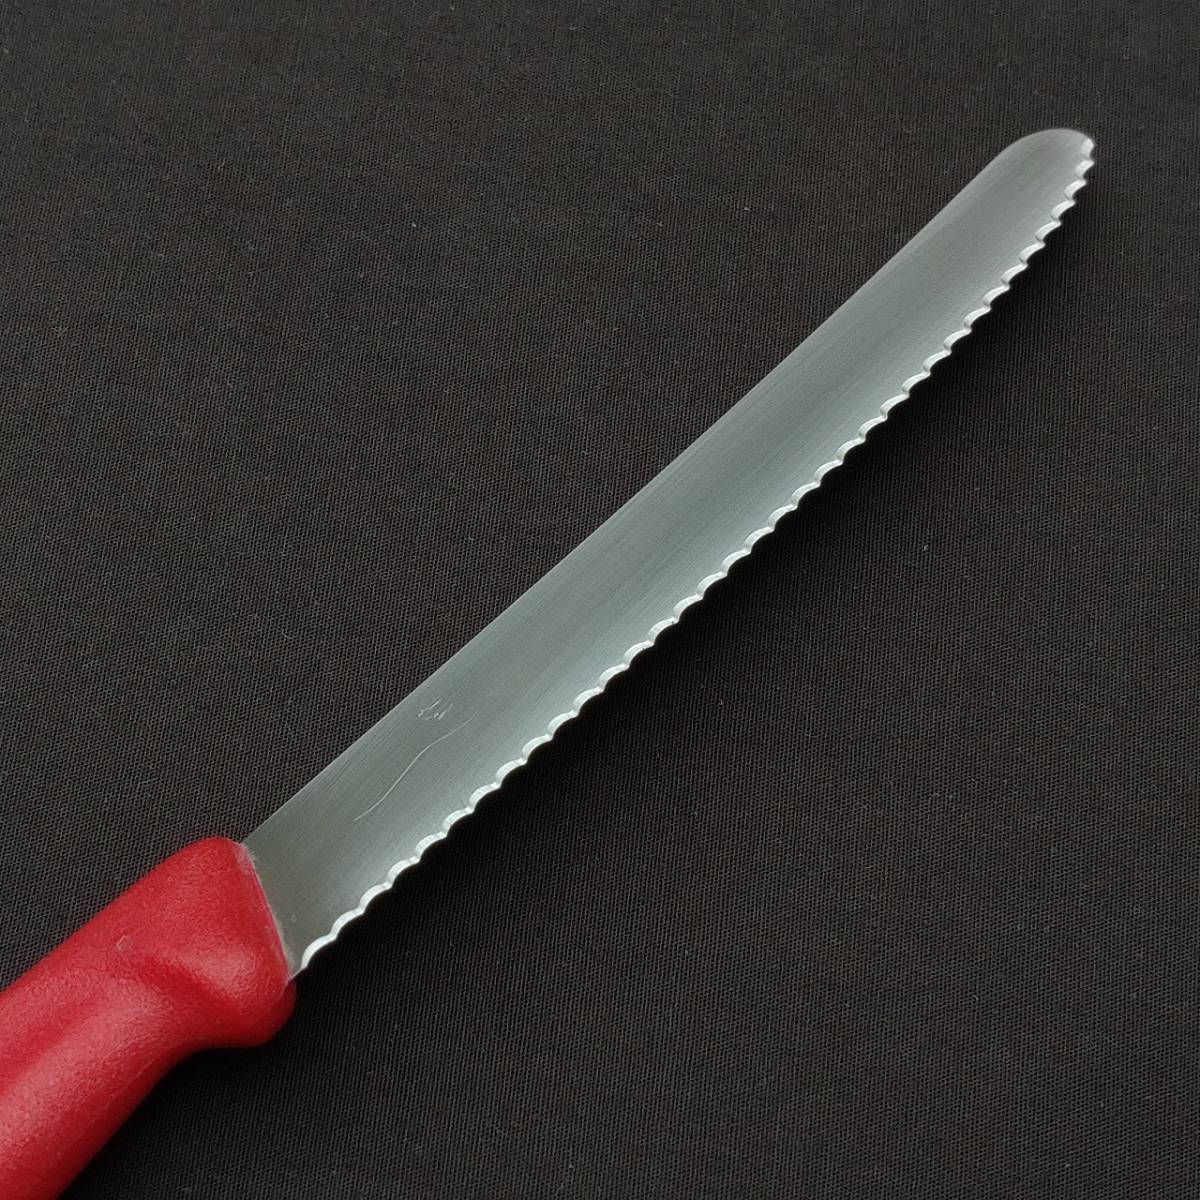  столовый нож ножи Victorinox VICTRINOX лезвие длина примерно 108. красный маленький нож европейского типа кухонный нож режущий инструмент SWISS MADE Швейцария производства [4056]